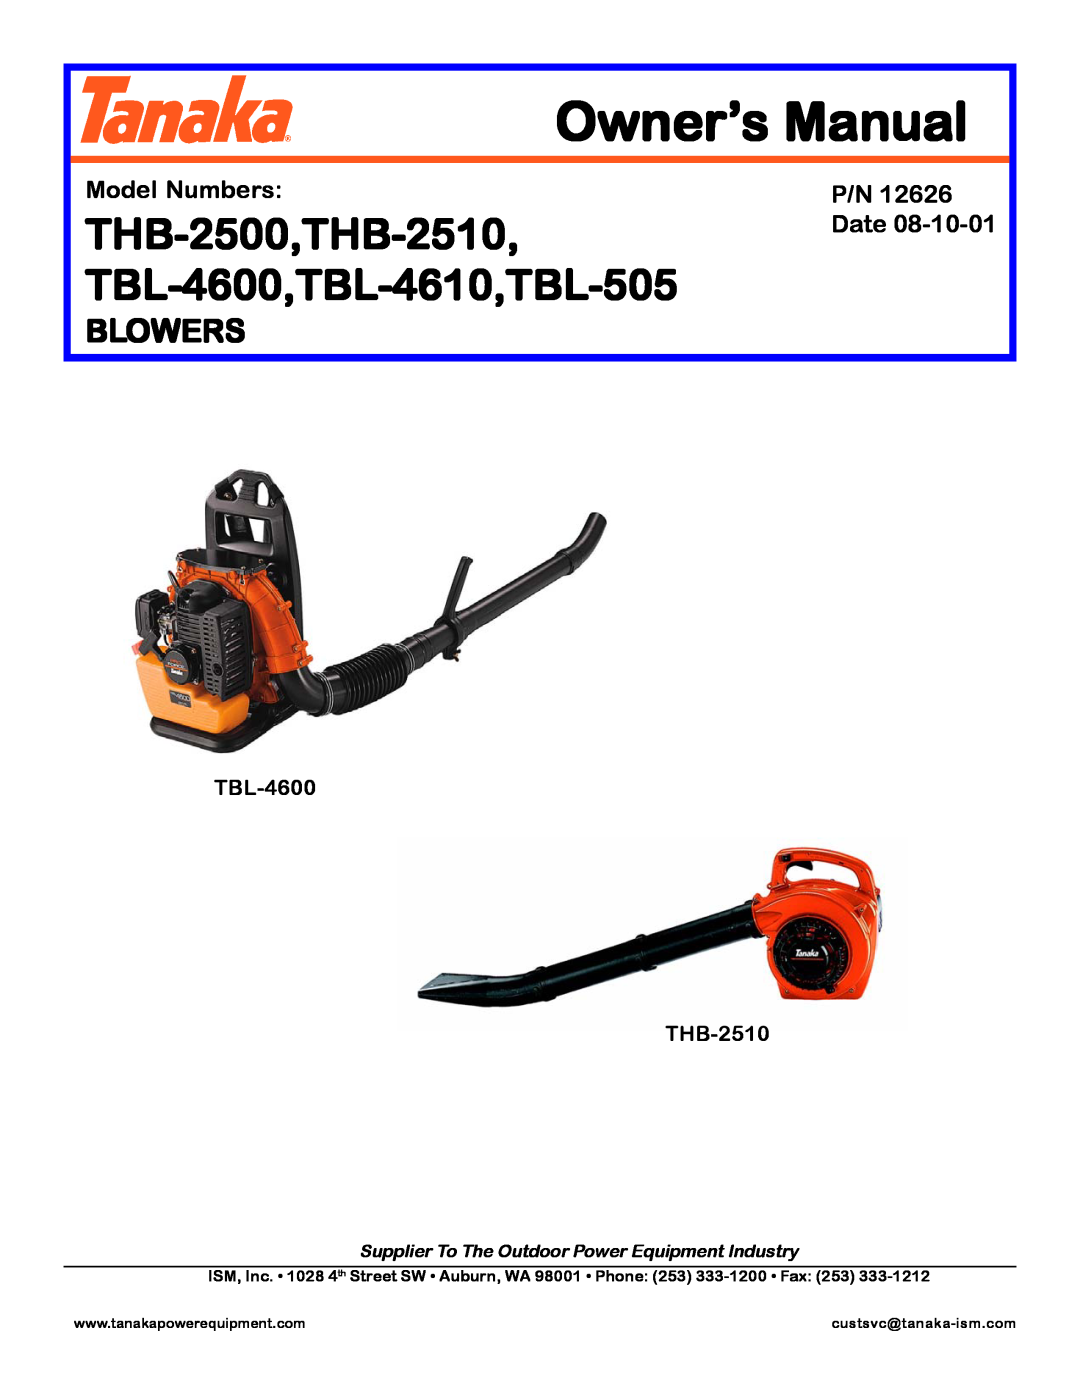 Tanaka manual Blowers, THB-2500,THB-2510, TBL-4600,TBL-4610,TBL-505, Model Numbers, Date, TBL-4600 THB-2510 